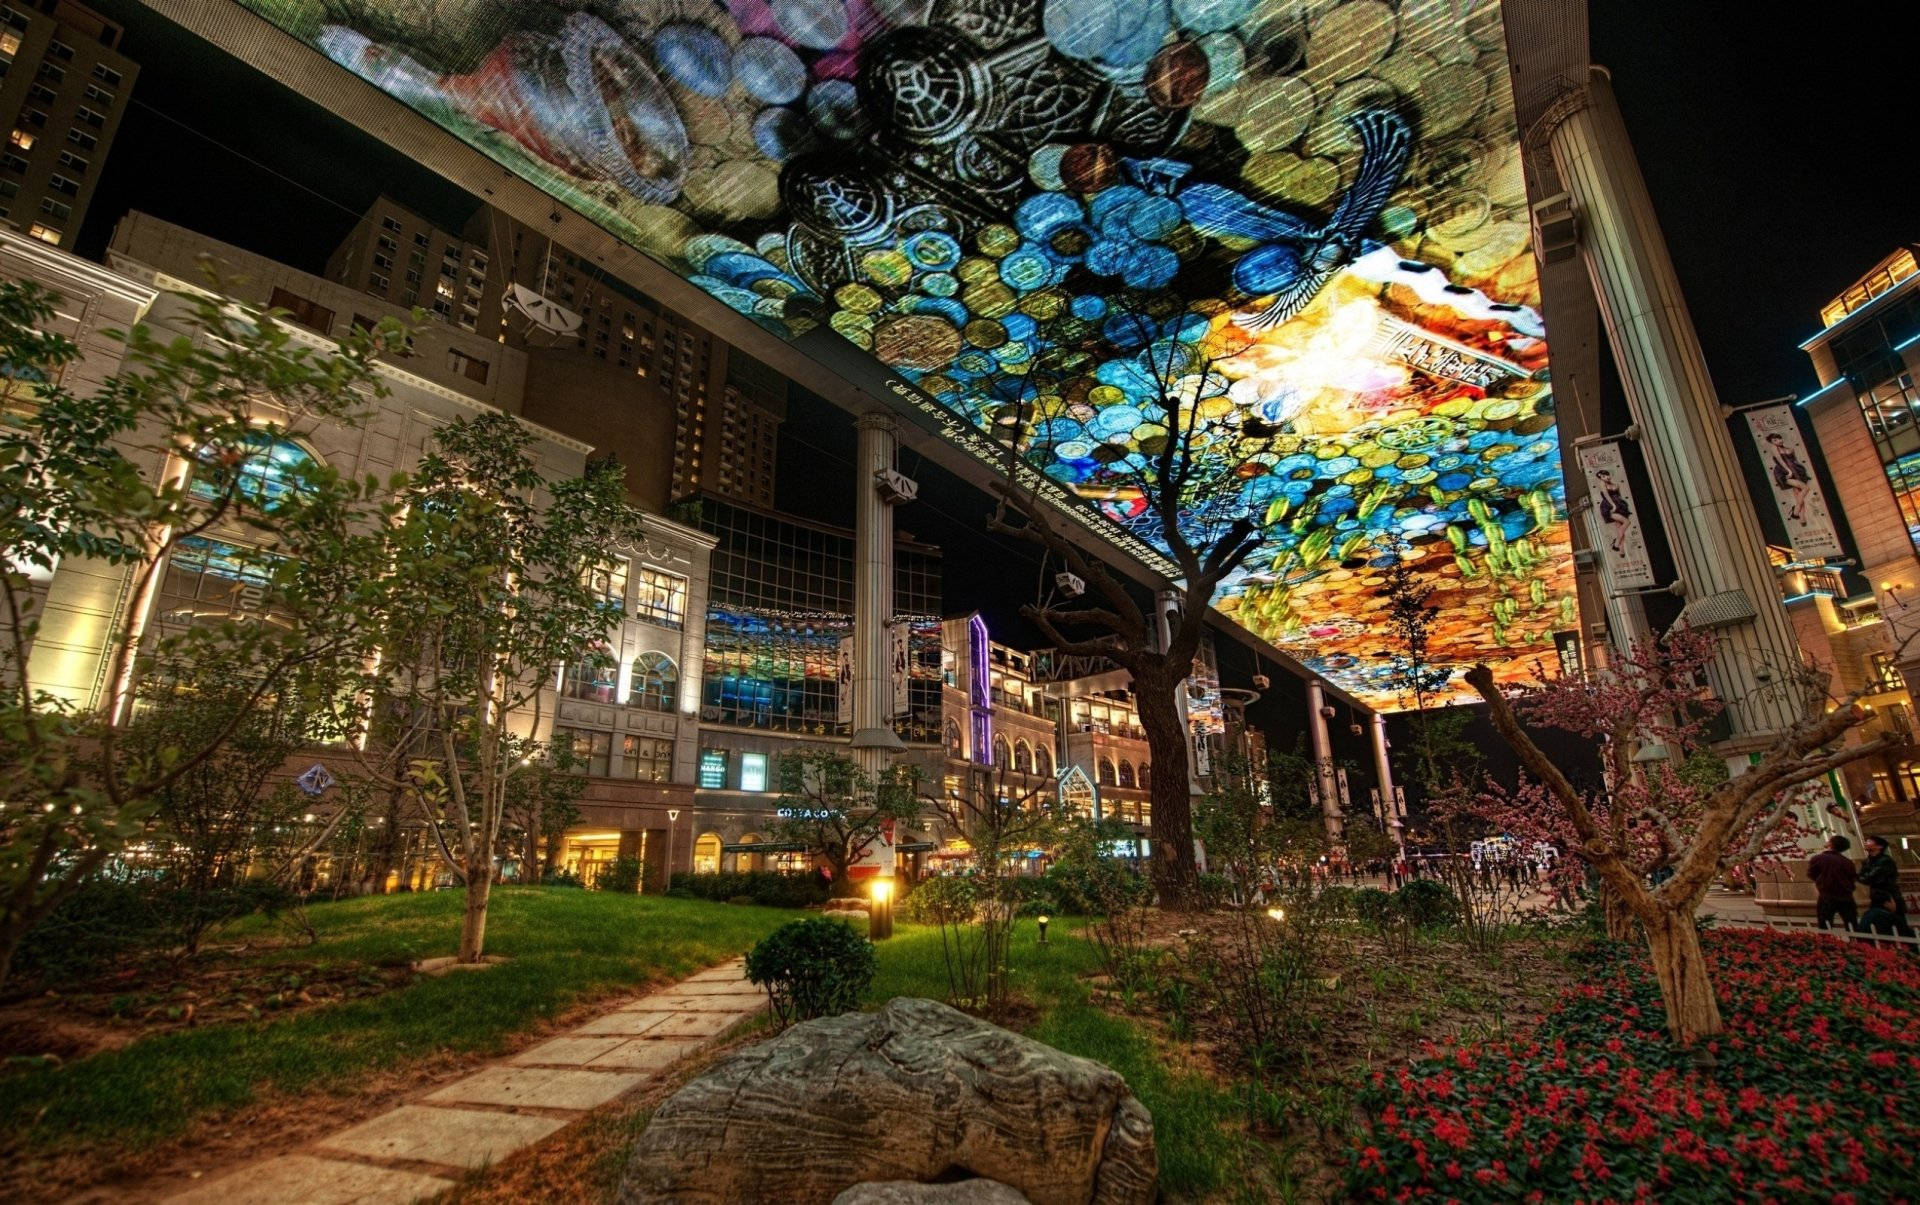 Beijing's Outdoor Garden Art Gallery Background